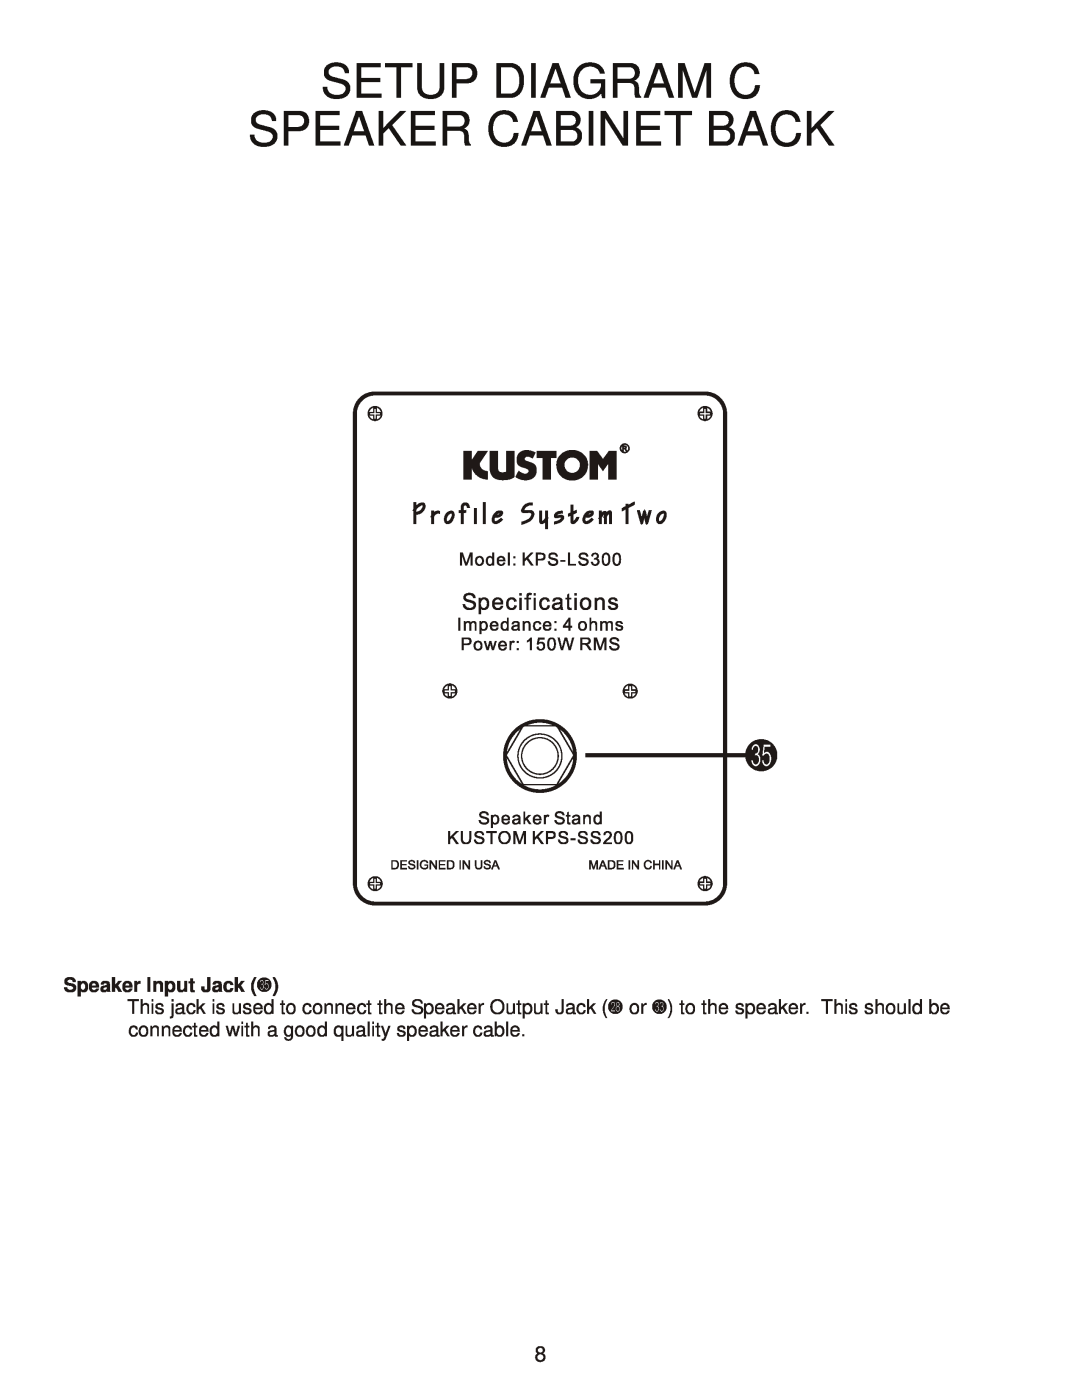 Kustom Profile System Two owner manual Setup Diagram C Speaker Cabinet Back, Speaker Input Jack Y 